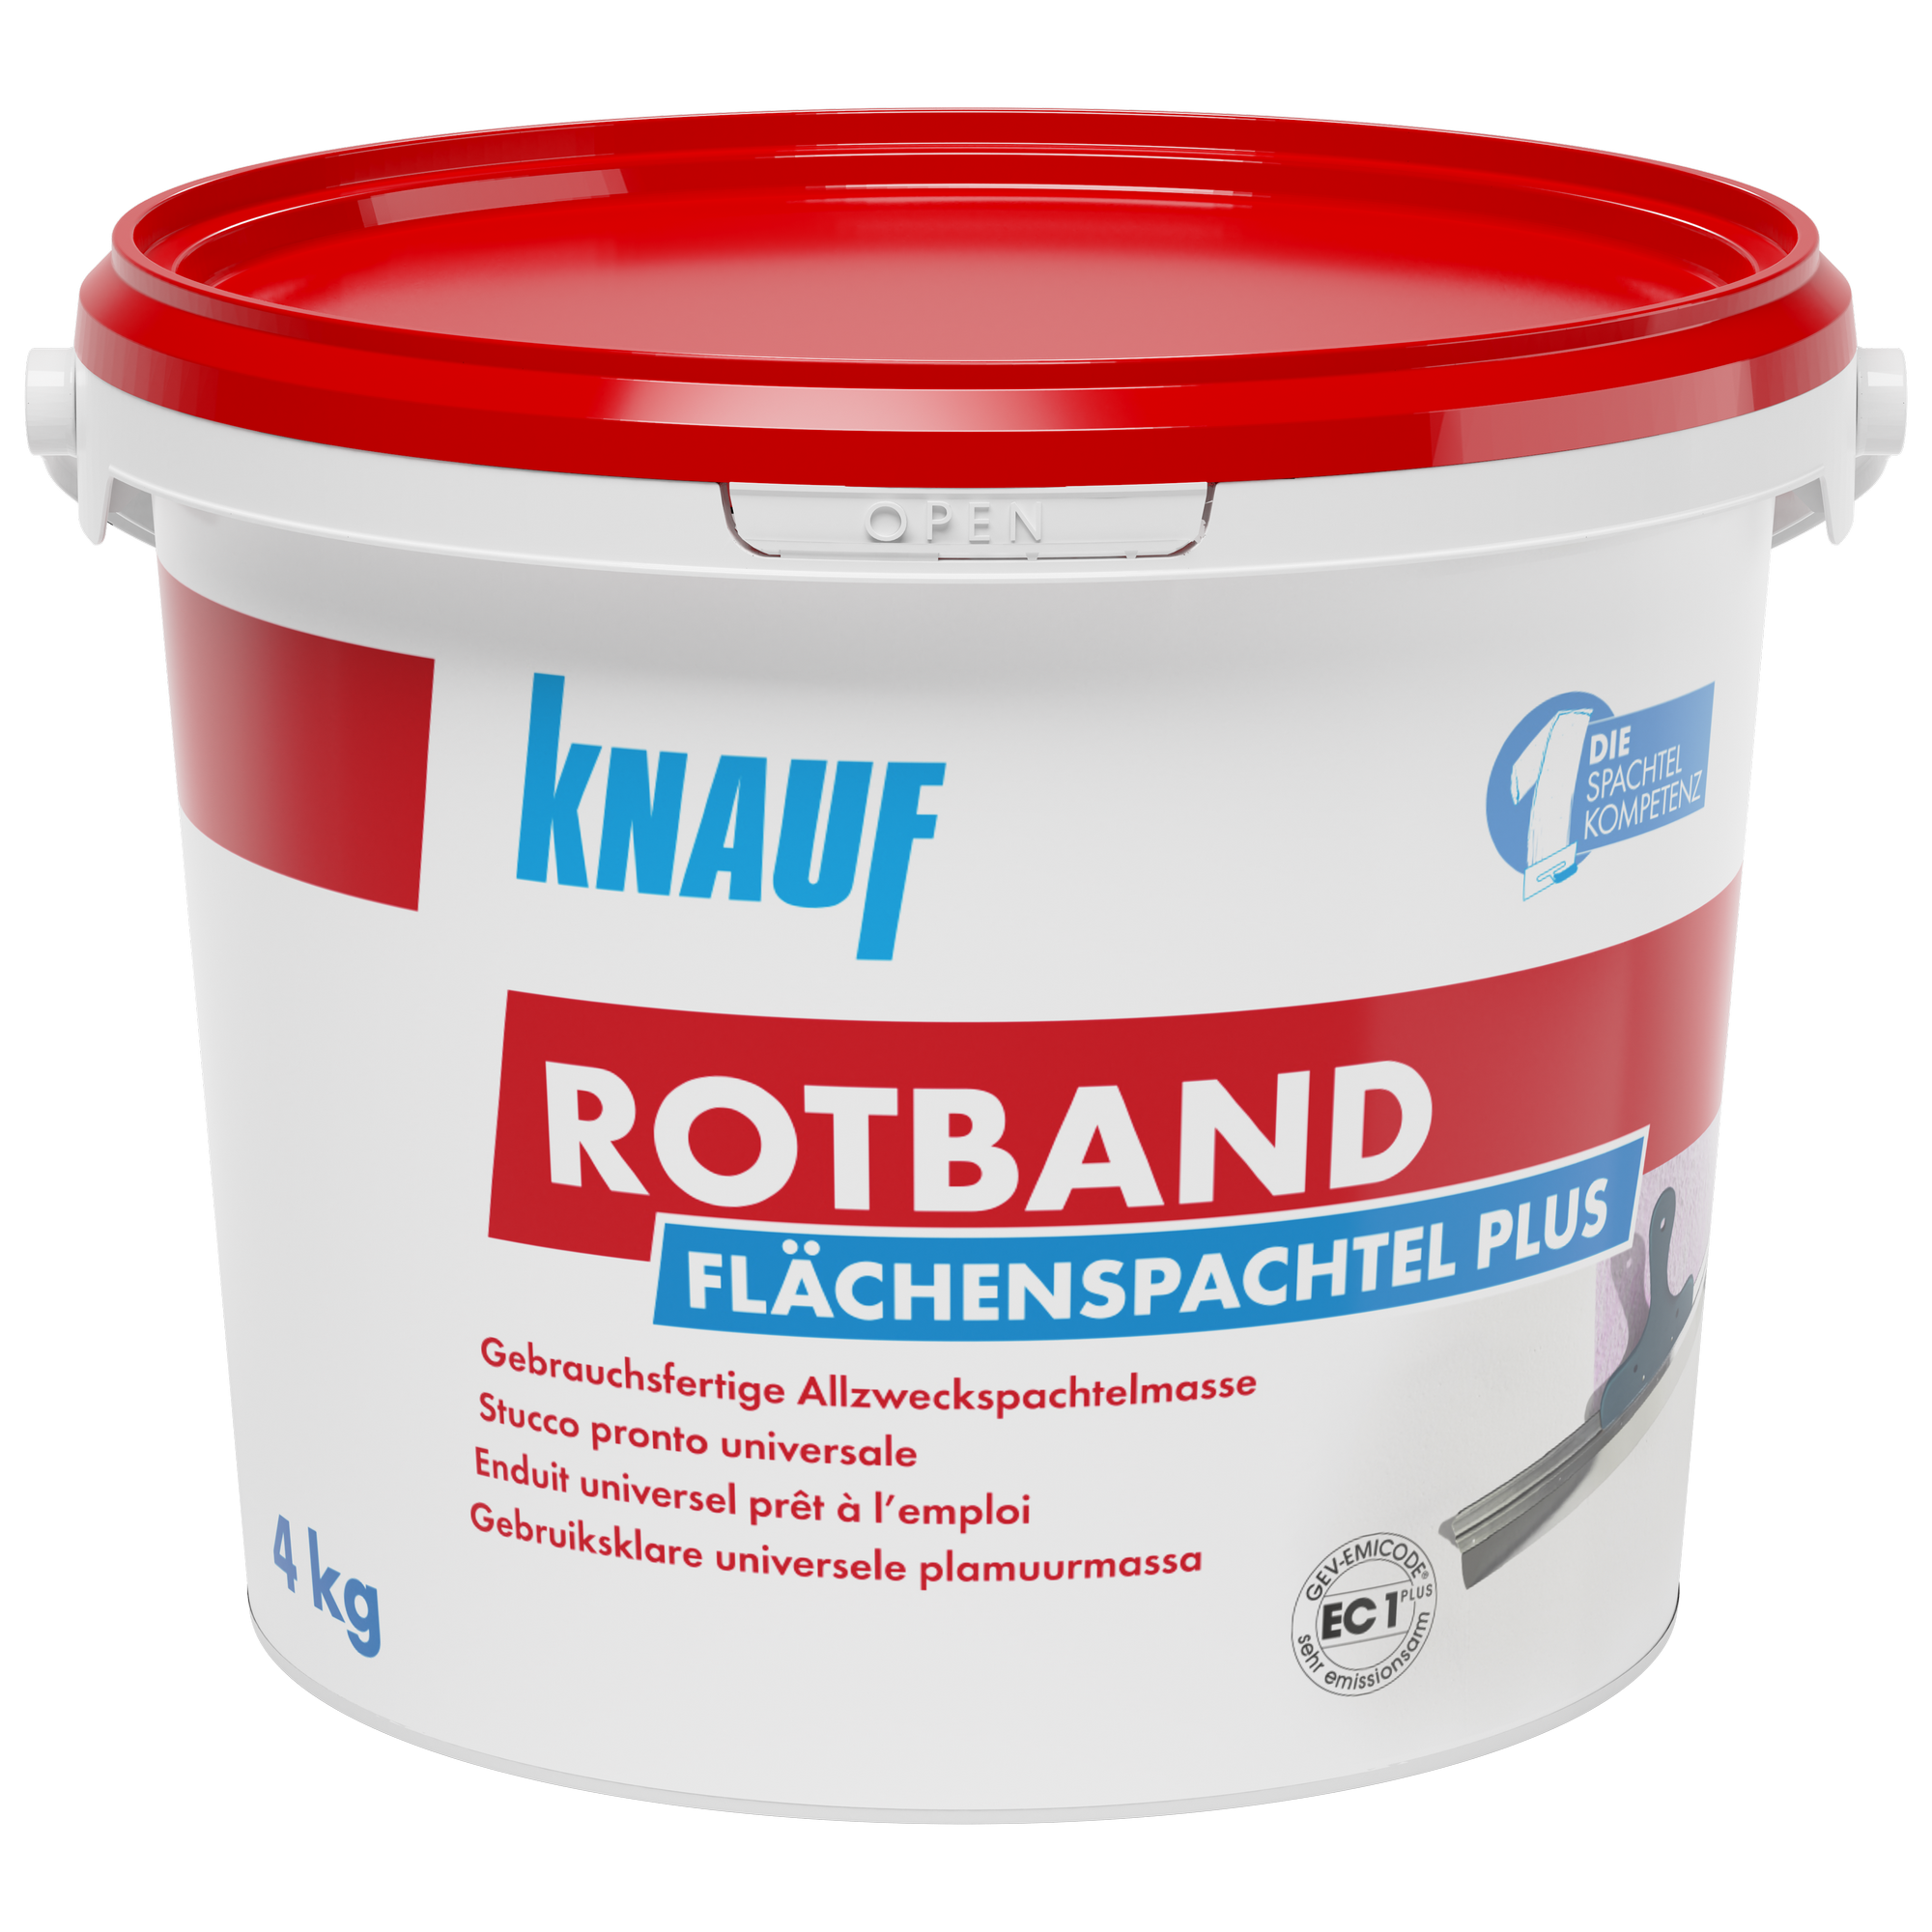 Flächenspachtel 'Rotband Plus' 4 kg + product picture